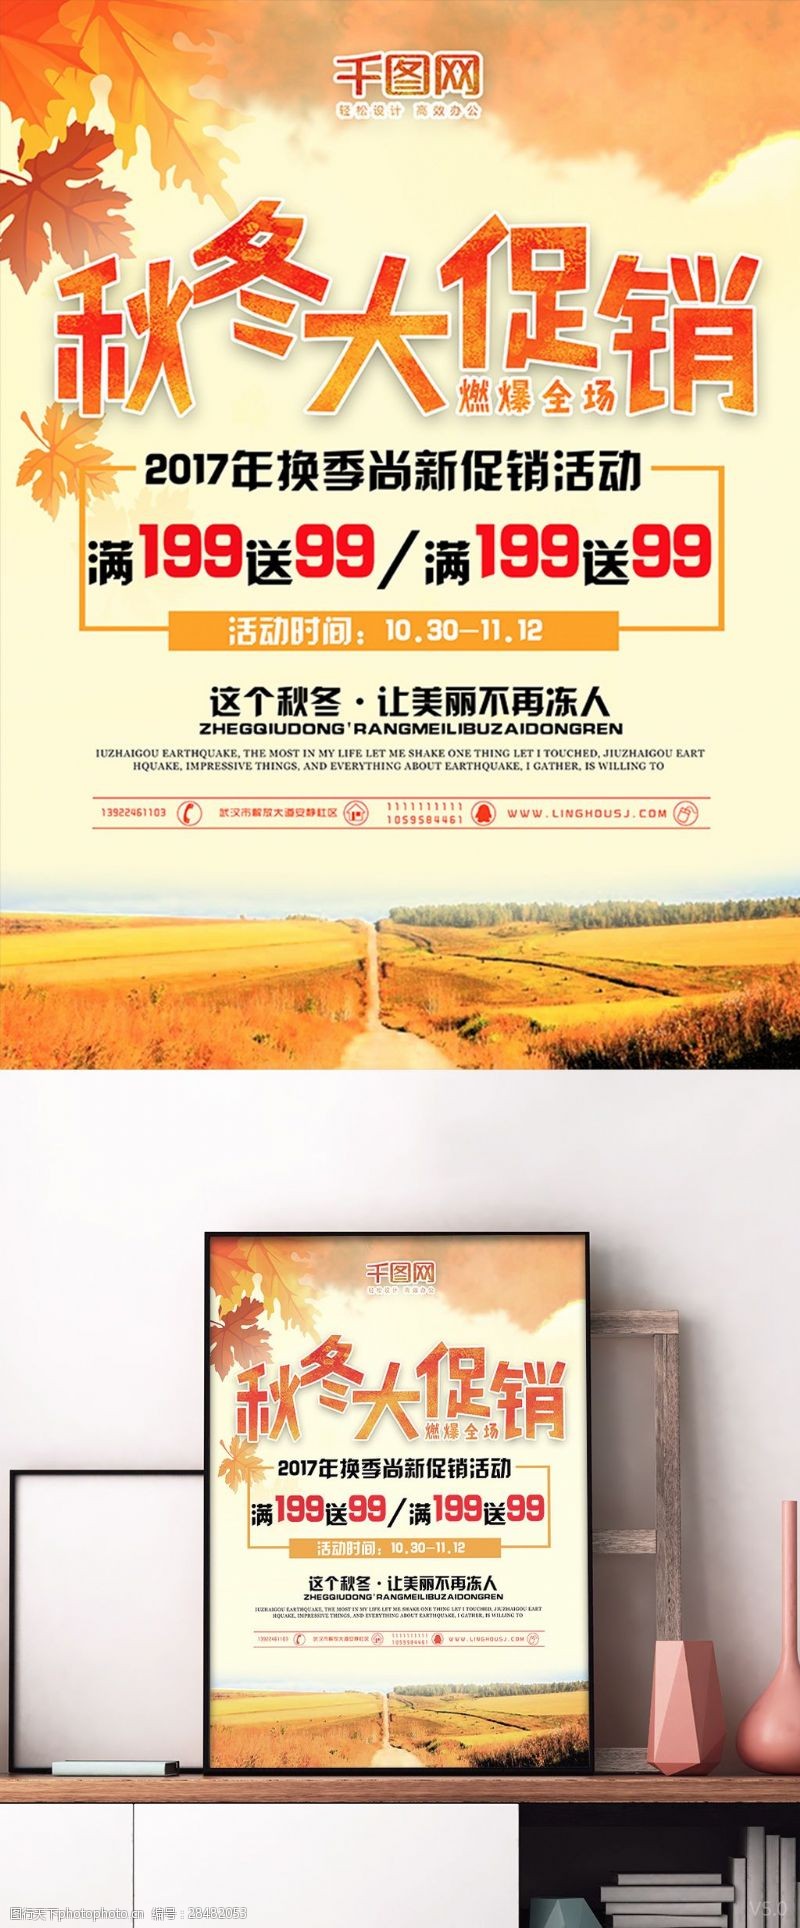 秋季活动秋色枫叶自然秋冬大促销活动海报设计